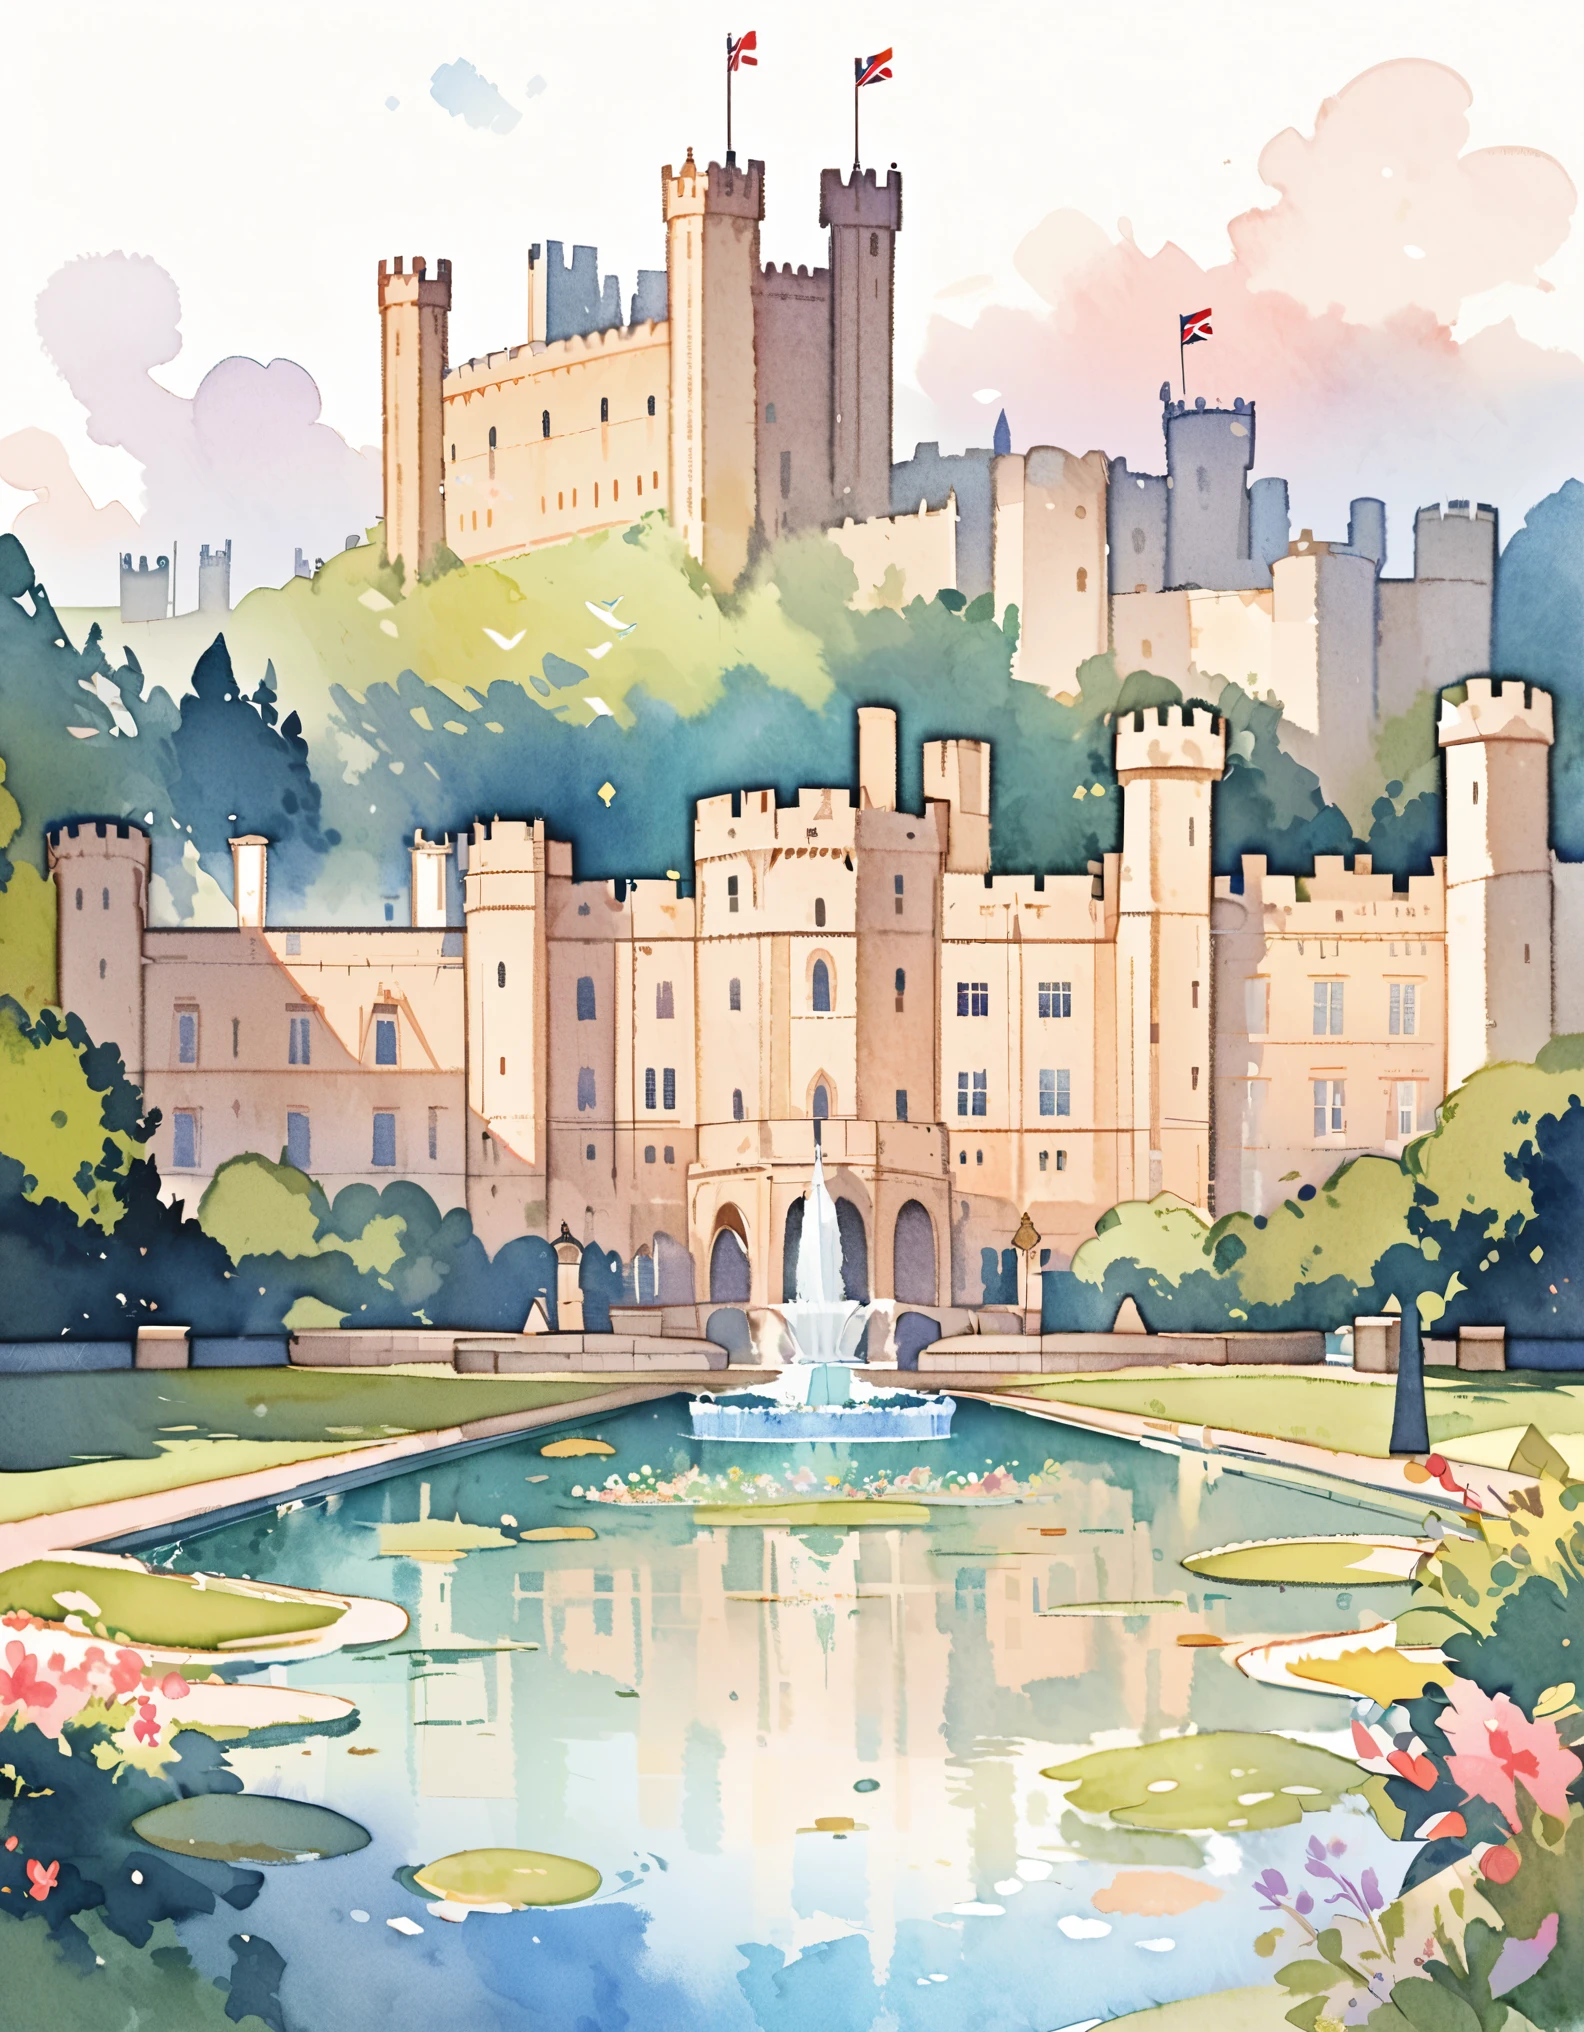 윈저 성, 영국 국왕의 공식 왕실 거주지, 침묵의 궁전, 영국의 성, 수채화:1.2, 기발하고 섬세하다, 어린이 그림처럼&#39;책, 부드러운 붓놀림, 어둑한, 연한 색상이 환상적인 모습을 연출합니다..